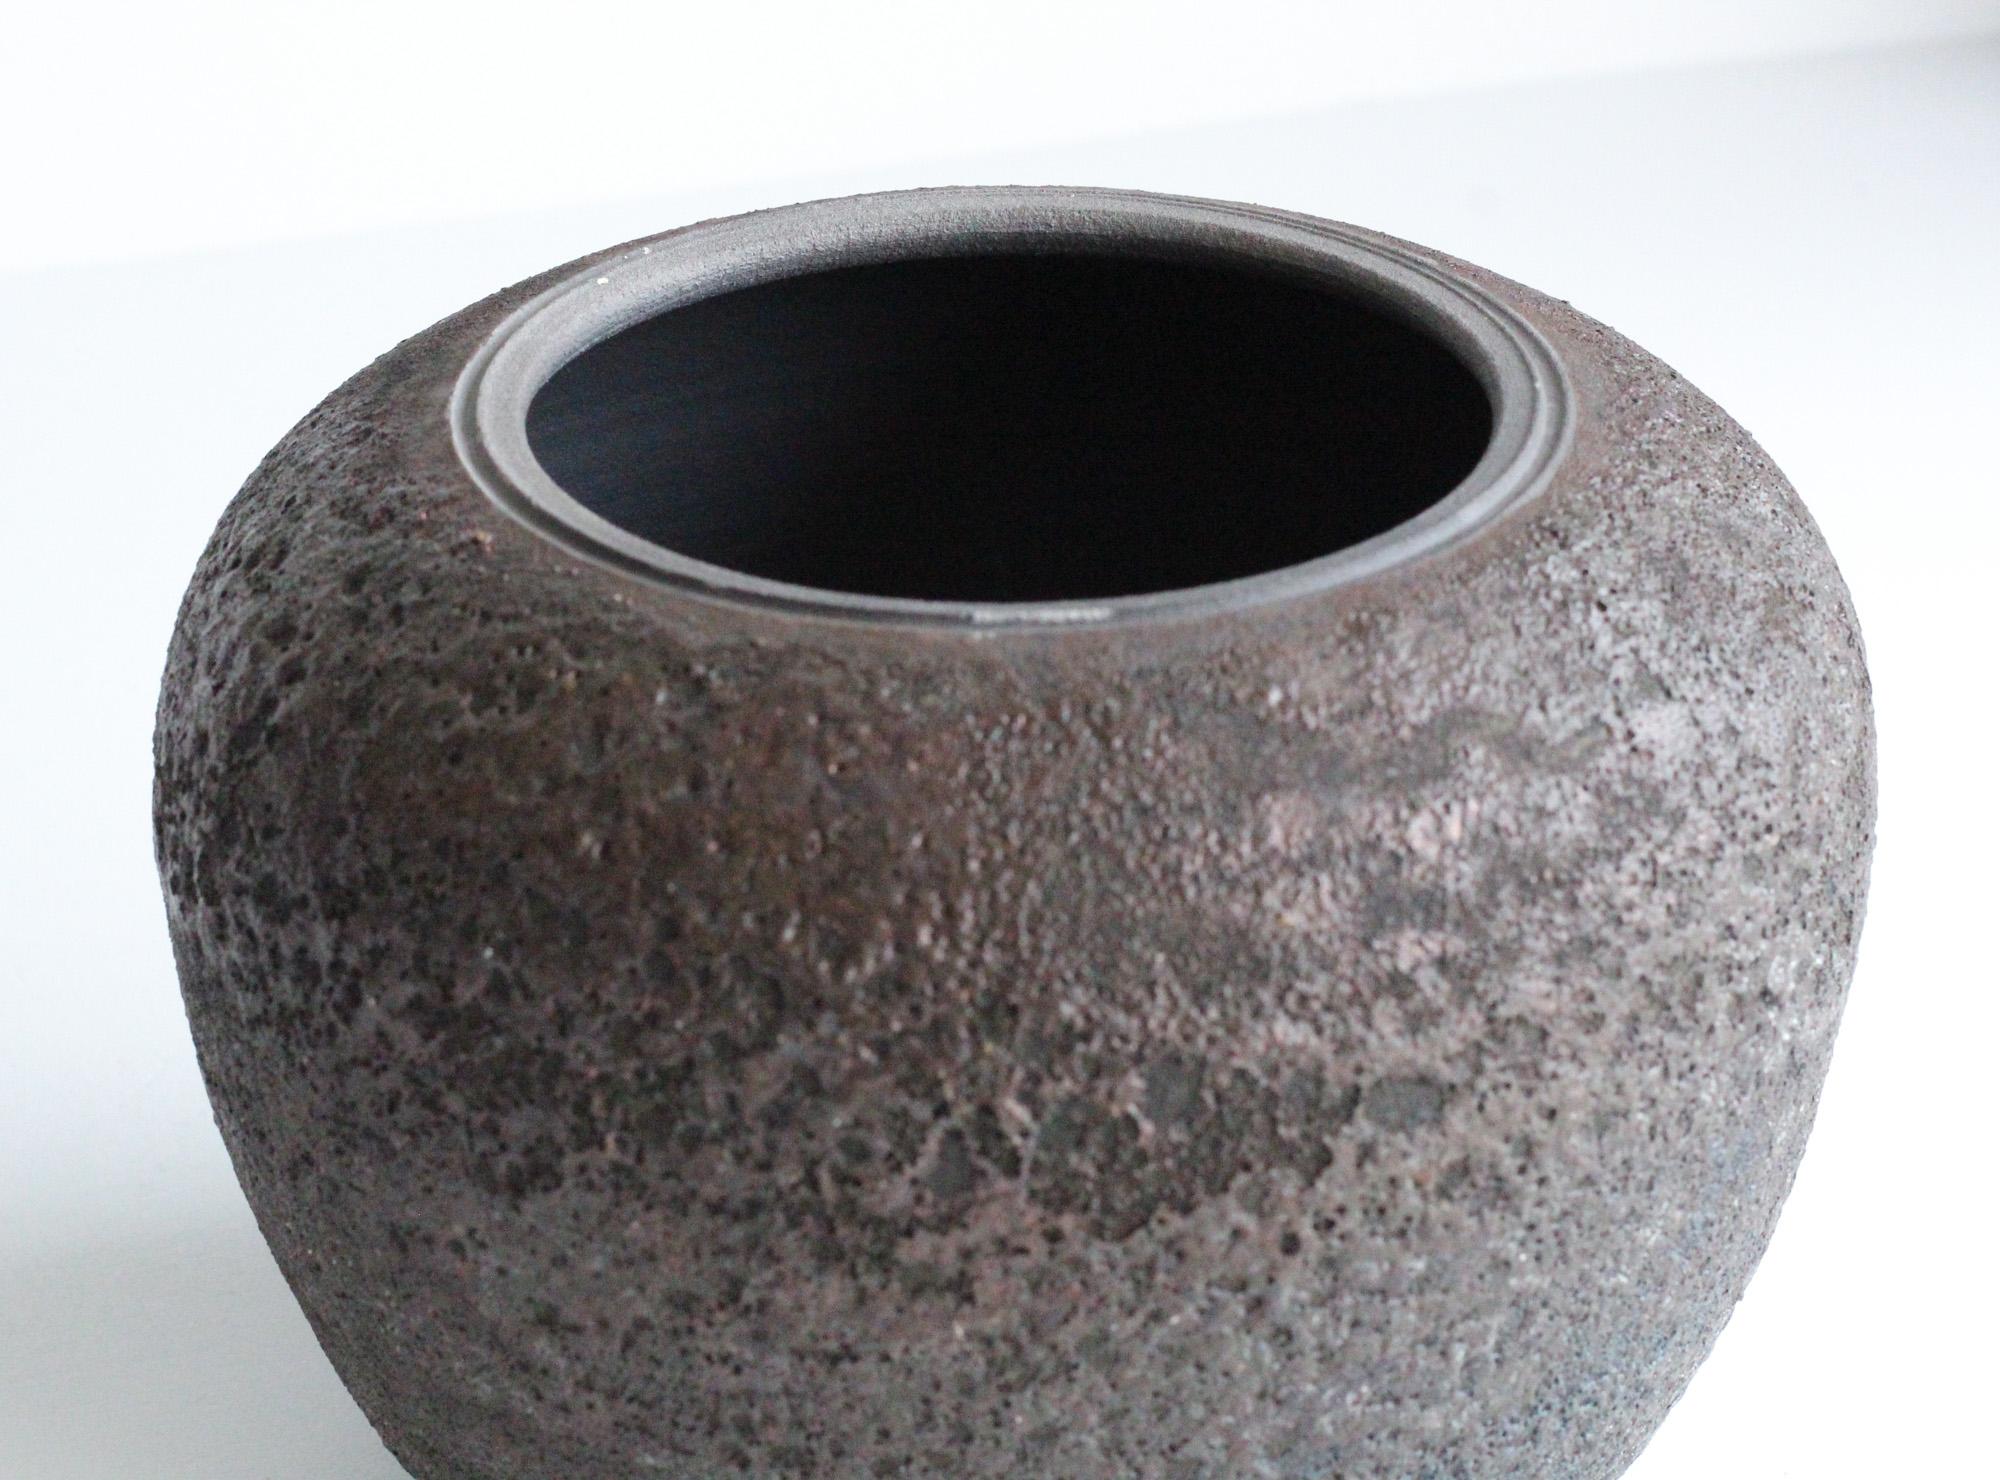 Studio Pottery Vessel Volcanic Glaze 2